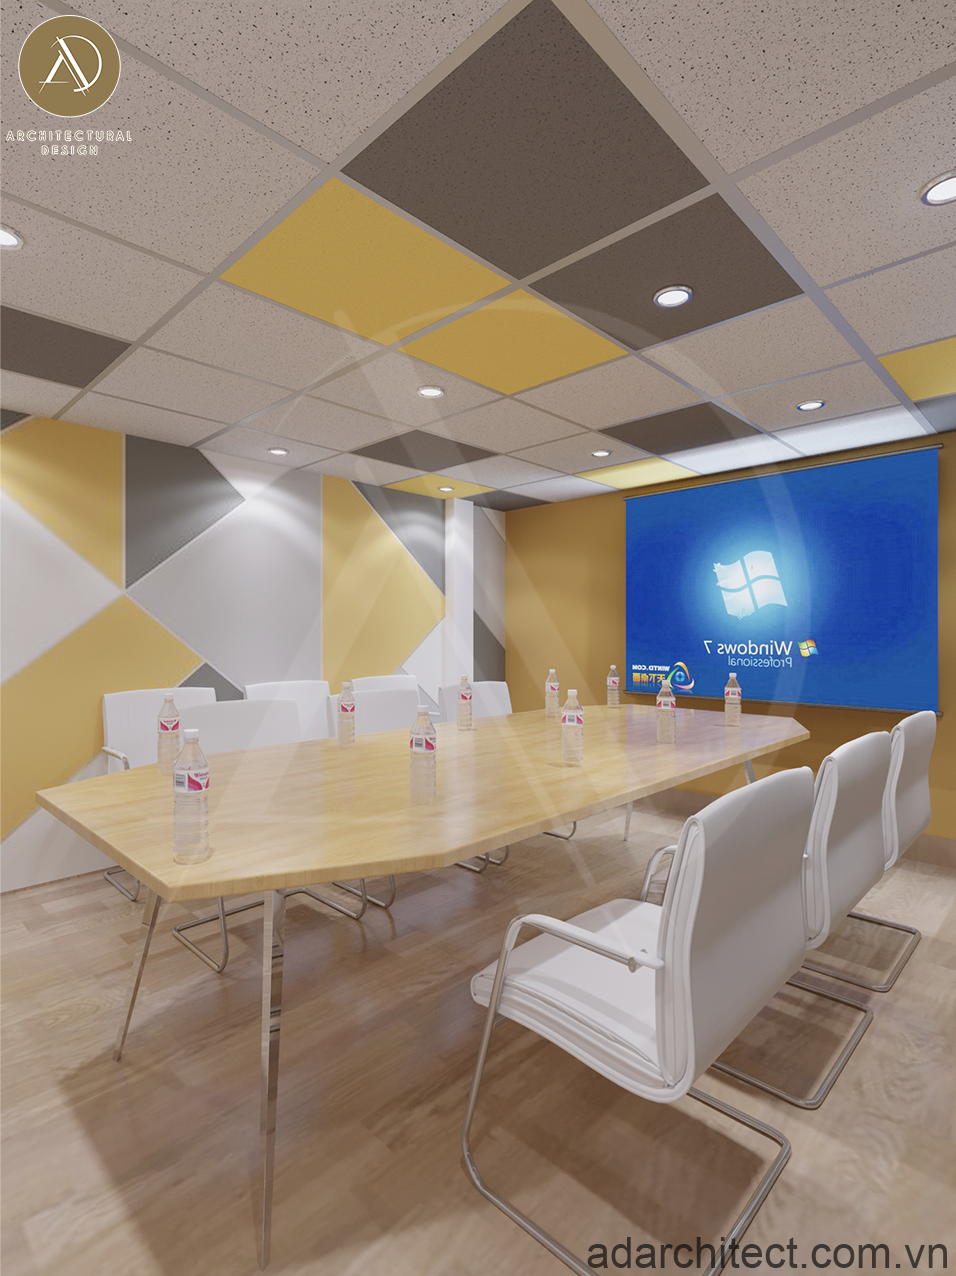 Thiết kế nội thất cho phòng họp của phòng mạch tư hiện đại với không gian rộng rãi